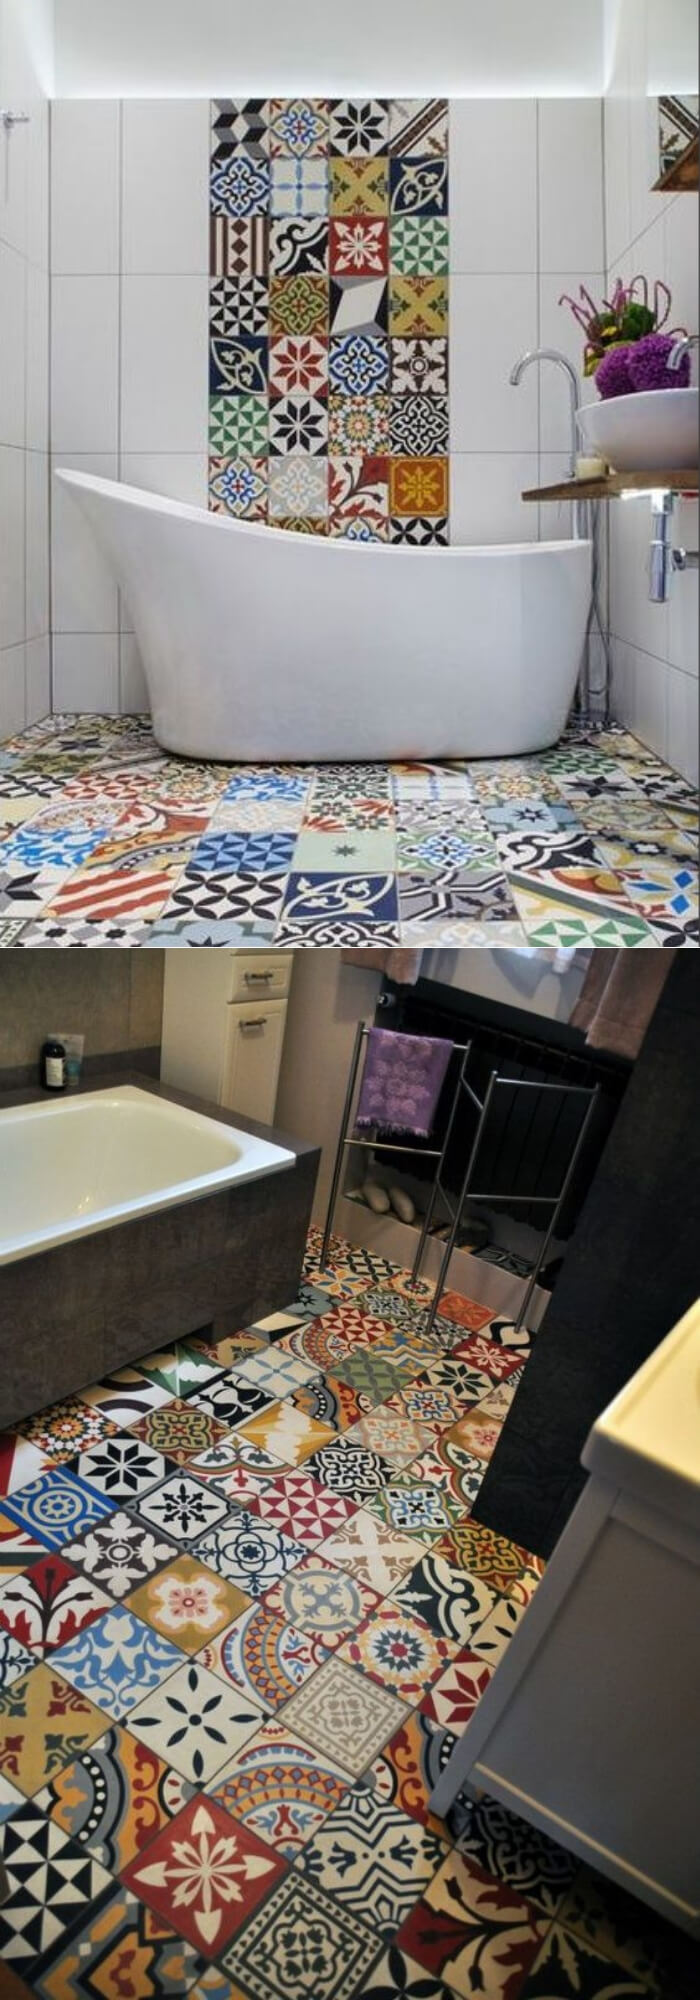 Vintage bathroom floor tile ideas